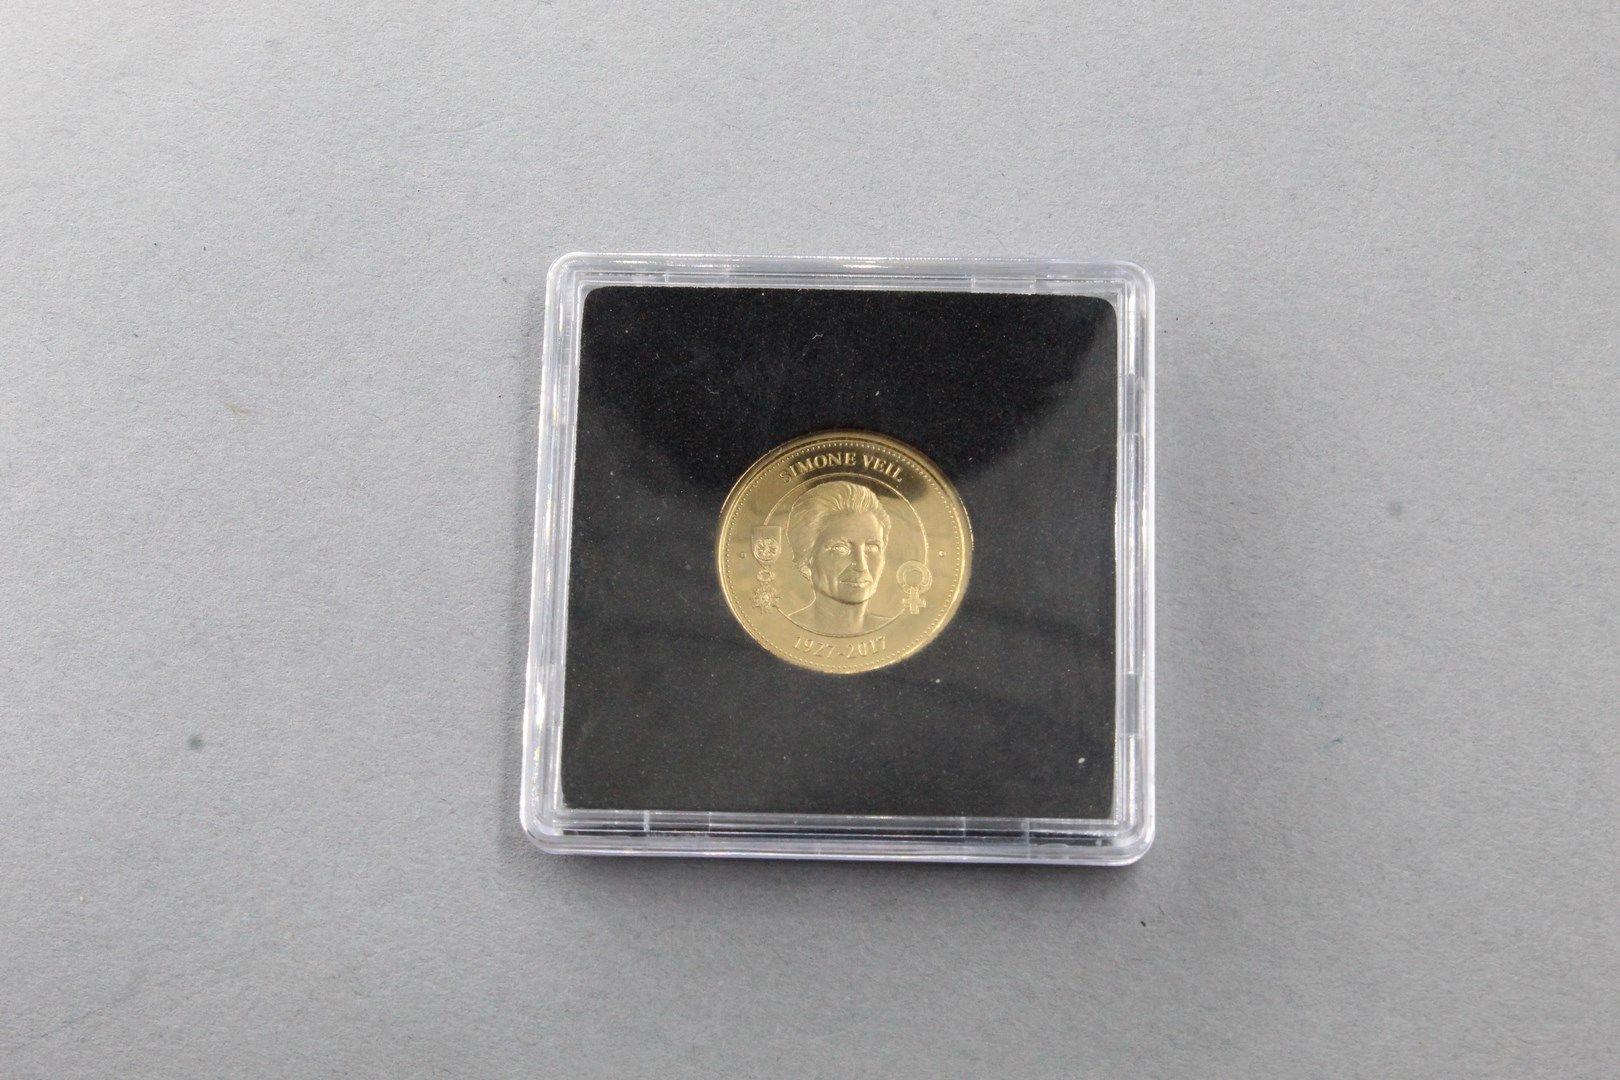 Null 印有西蒙娜-韦尔头像的纪念金币。

SUP。

重量：3.49克。